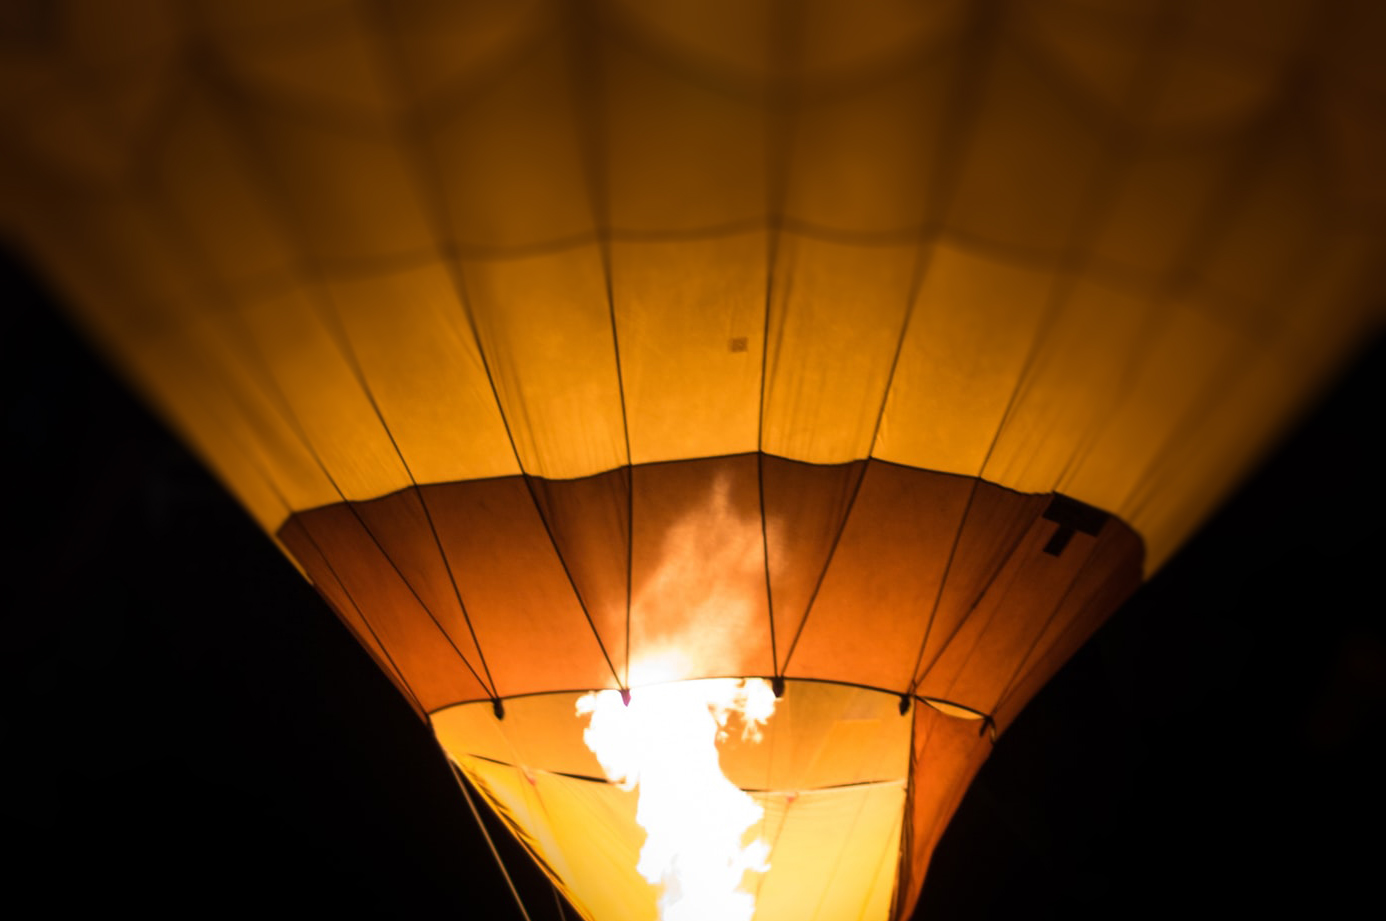 Fuego del quemador de un globo aerostático